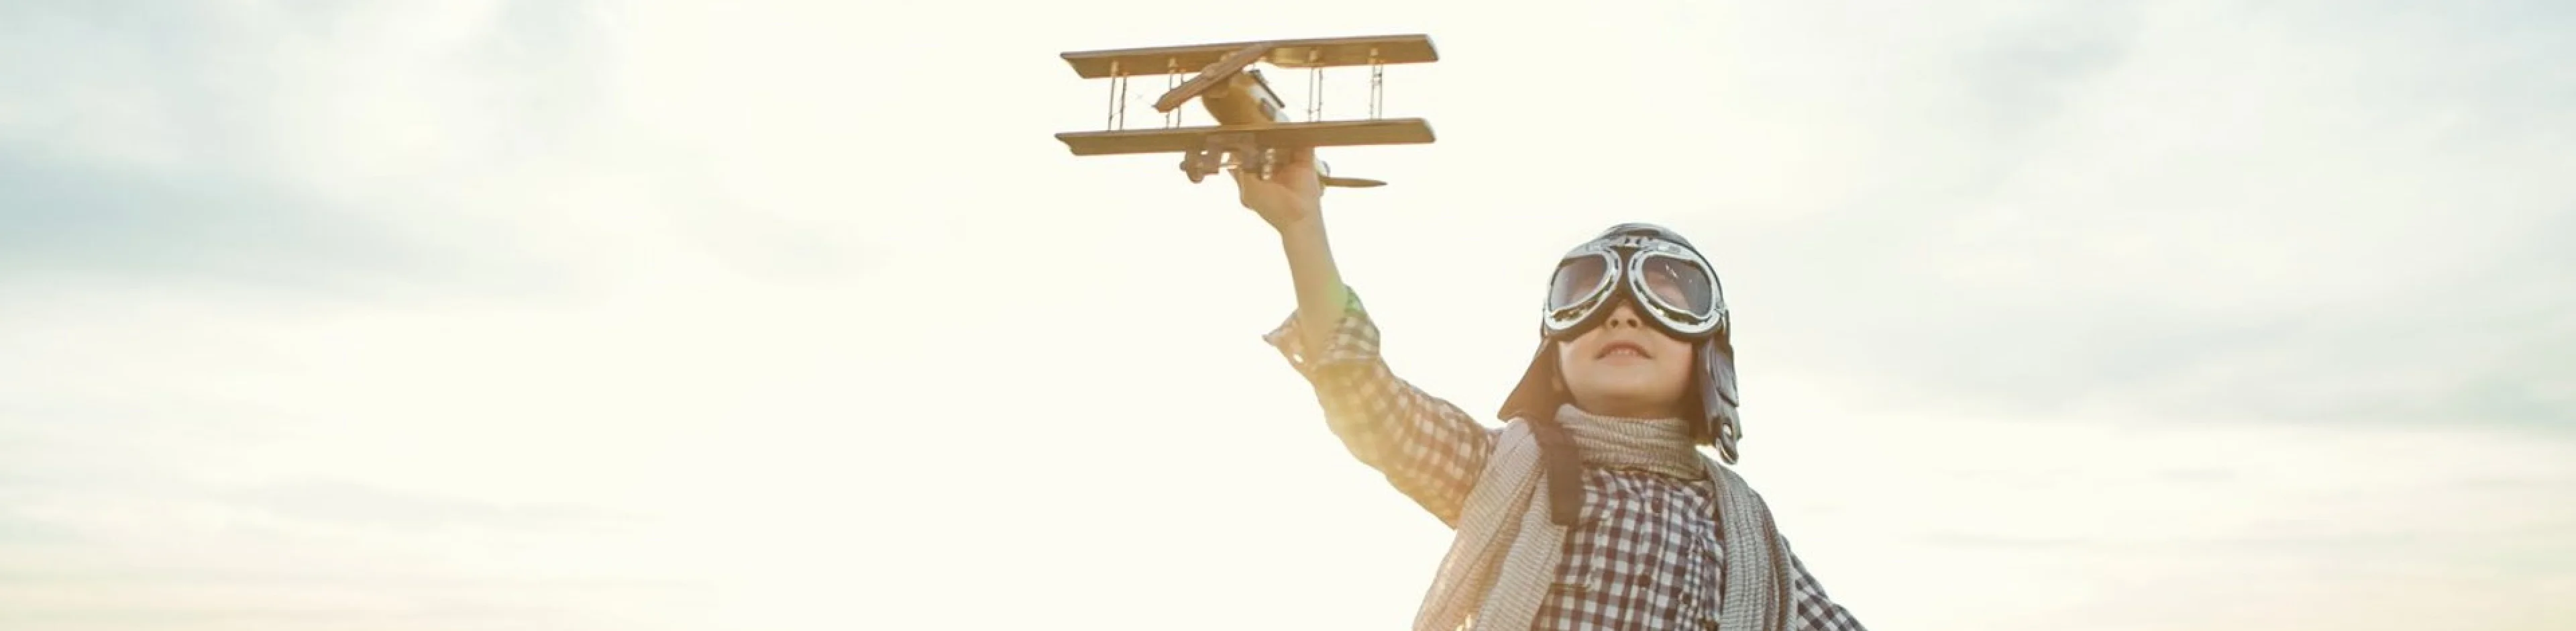 Estudante do Bernoulli brincando com um avião.